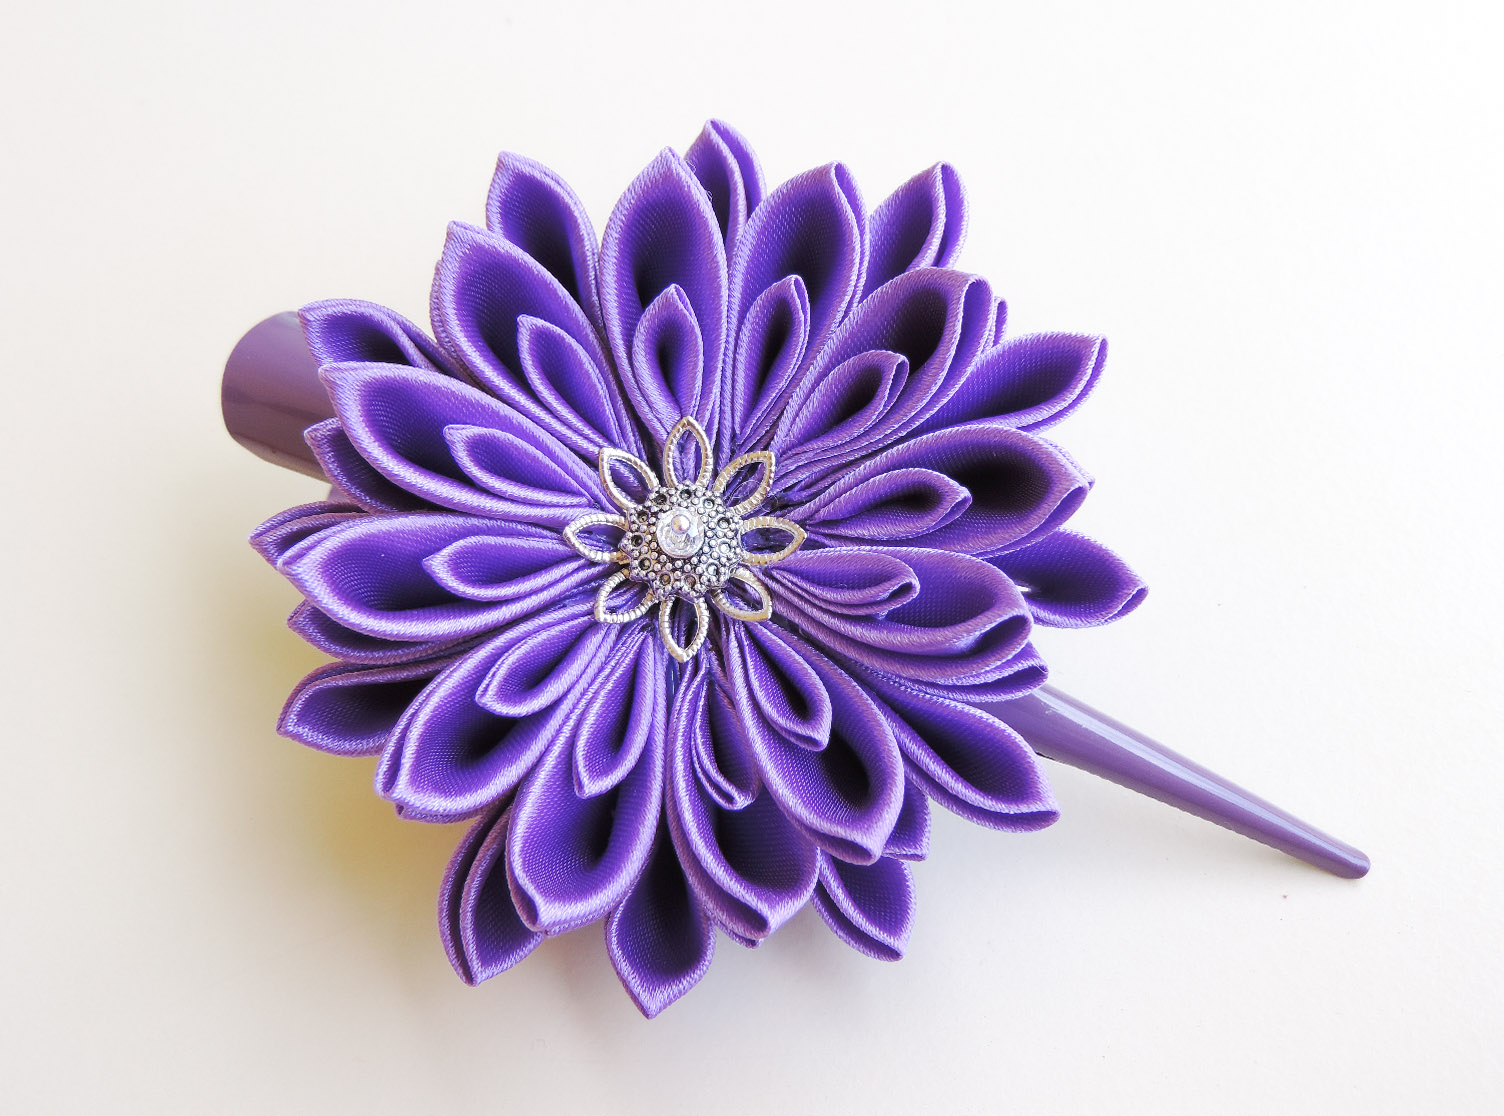 Lilac purple satin chrysanthemum - DIY tutorial